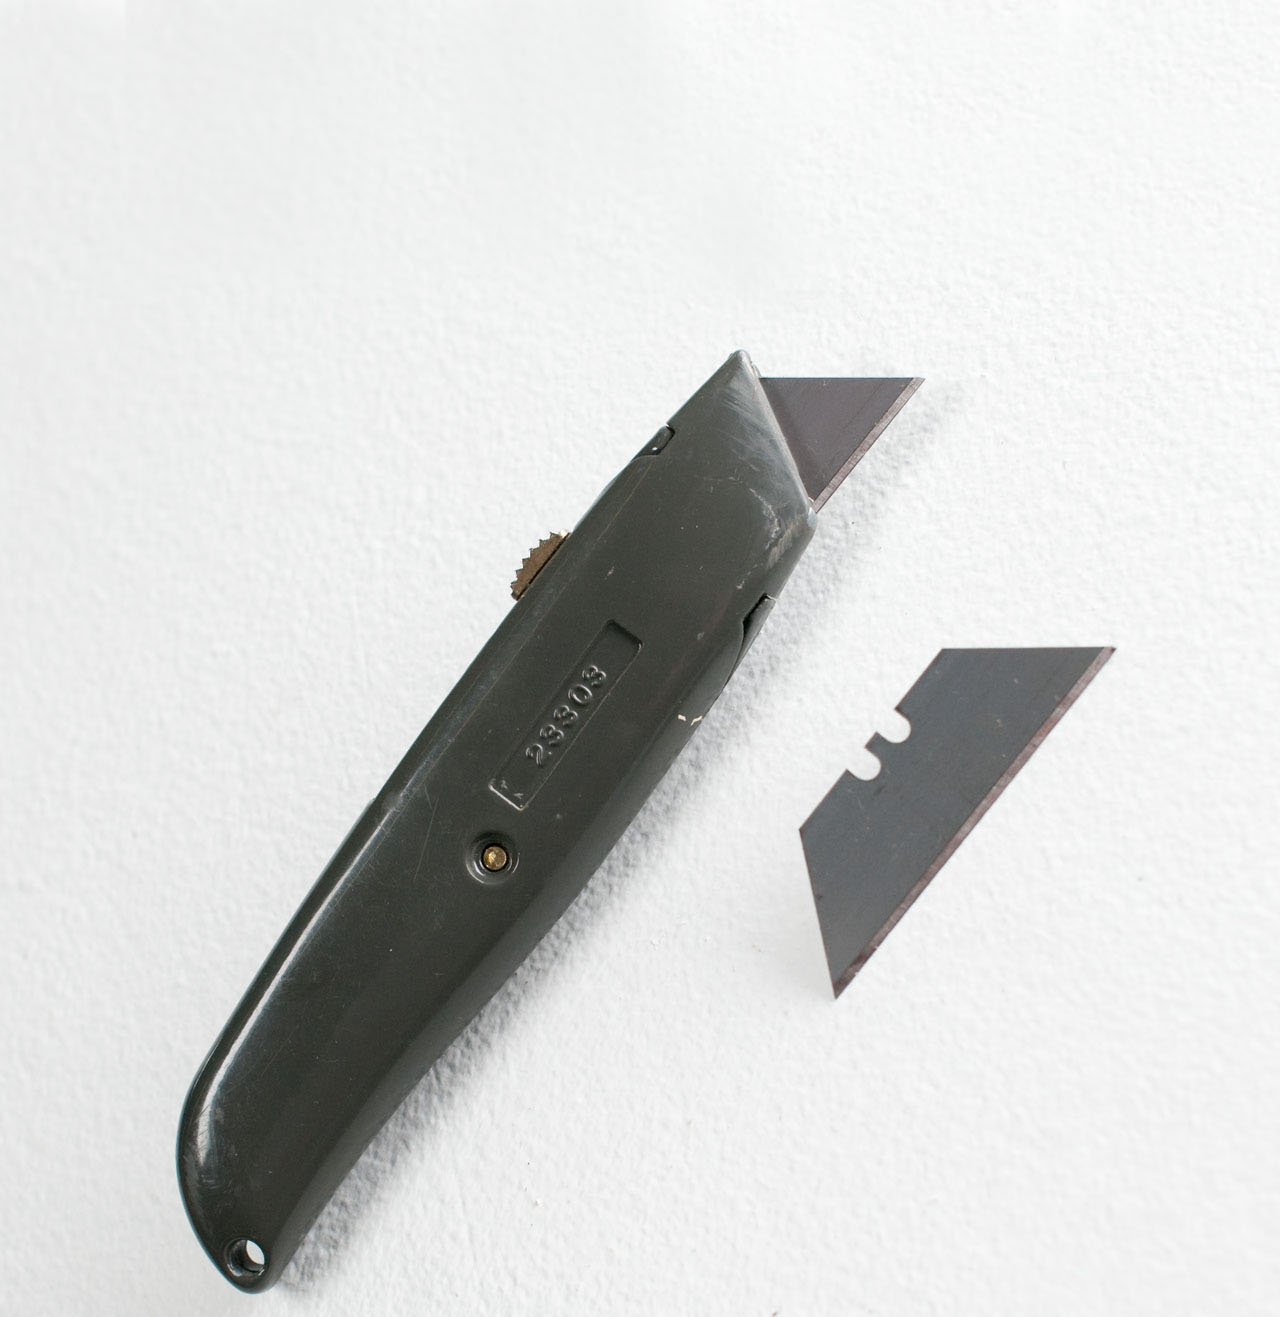 Basic DIY Utility Knife